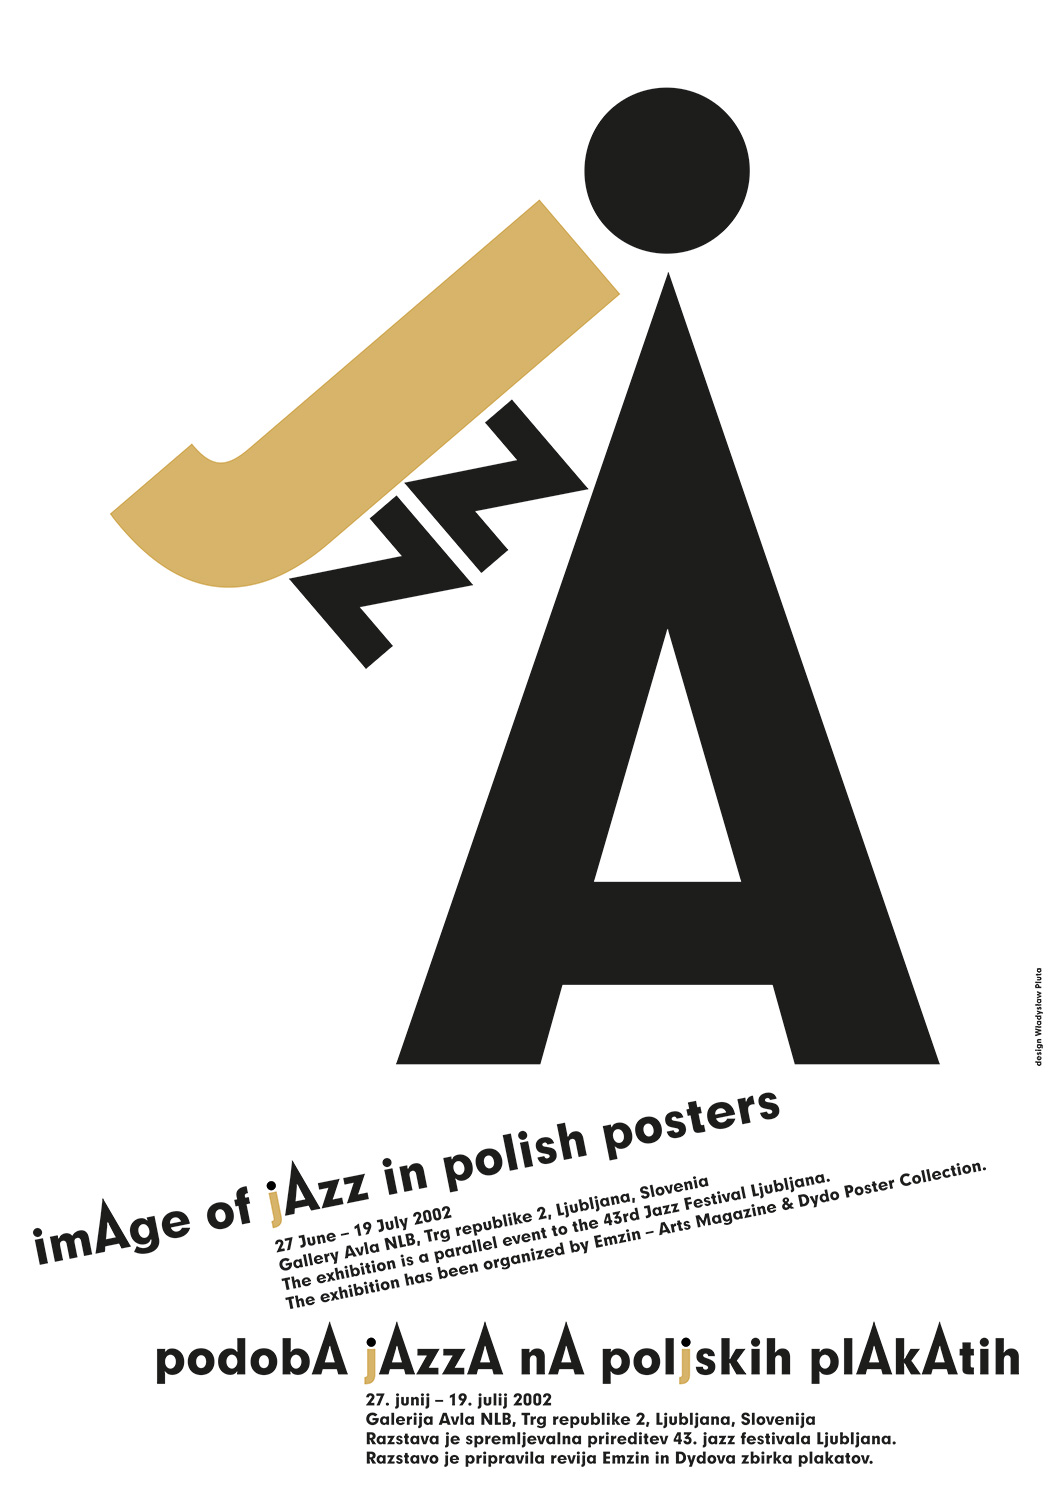 Pluta_Władysław_Polska_image-of-Jazz